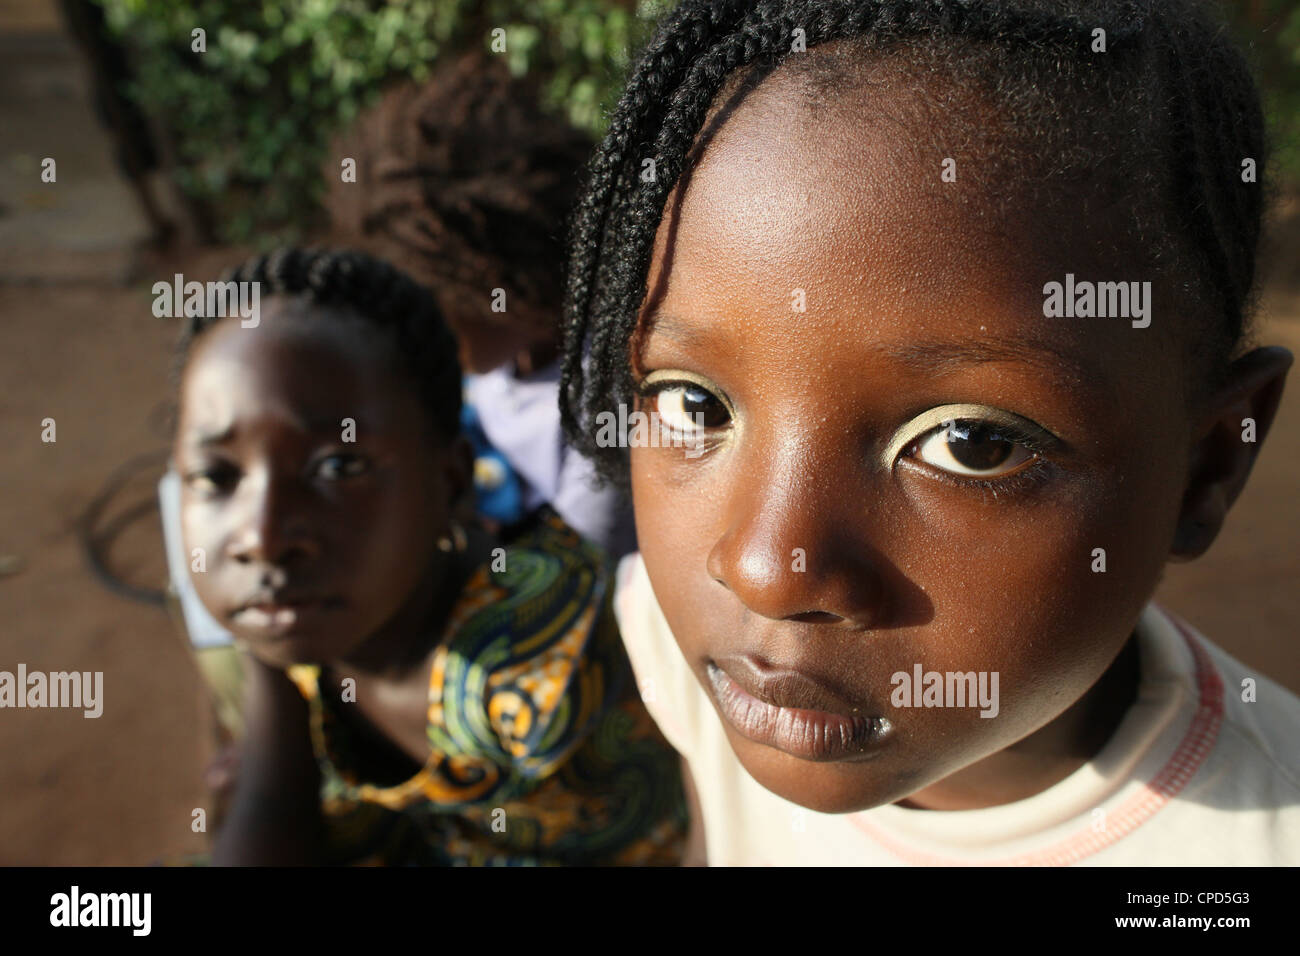 Afrikanische Kinder, Lome, Togo, West Afrika, Afrika Stockfoto